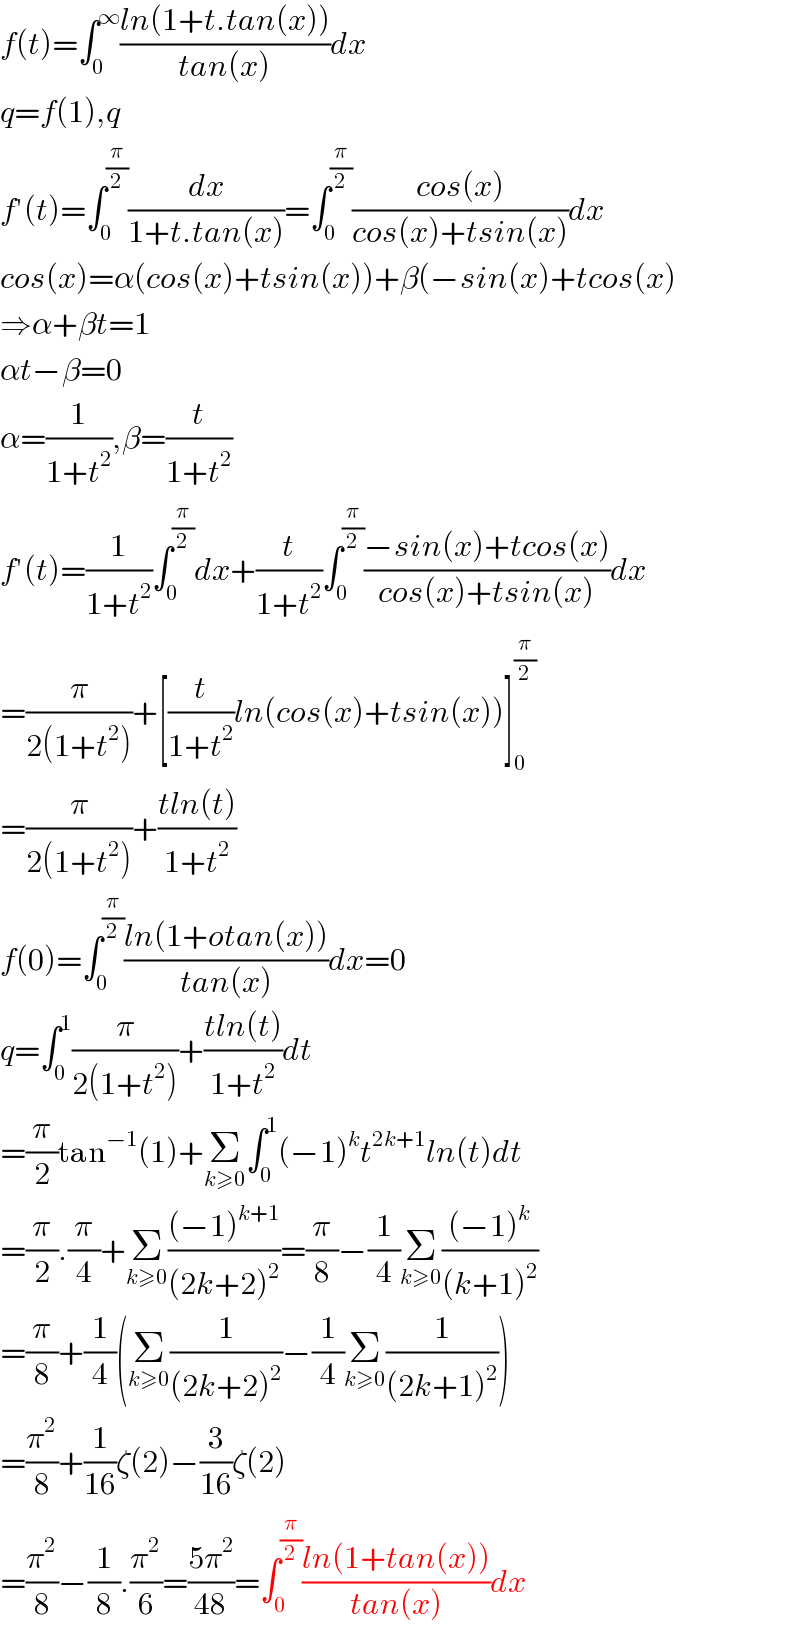 f(t)=∫_0 ^∞ ((ln(1+t.tan(x)))/(tan(x)))dx  q=f(1),q  f′(t)=∫_0 ^(π/2) (dx/(1+t.tan(x)))=∫_0 ^(π/2) ((cos(x))/(cos(x)+tsin(x)))dx  cos(x)=α(cos(x)+tsin(x))+β(−sin(x)+tcos(x)  ⇒α+βt=1  αt−β=0  α=(1/(1+t^2 )),β=(t/(1+t^2 ))  f′(t)=(1/(1+t^2 ))∫_0 ^(π/2) dx+(t/(1+t^2 ))∫_0 ^(π/2) ((−sin(x)+tcos(x))/(cos(x)+tsin(x)))dx  =(π/(2(1+t^2 )))+[(t/(1+t^2 ))ln(cos(x)+tsin(x))]_0 ^(π/2)   =(π/(2(1+t^2 )))+((tln(t))/(1+t^2 ))  f(0)=∫_0 ^(π/2) ((ln(1+otan(x)))/(tan(x)))dx=0  q=∫_0 ^1 (π/(2(1+t^2 )))+((tln(t))/(1+t^2 ))dt  =(π/2)tan^(−1) (1)+Σ_(k≥0) ∫_0 ^1 (−1)^k t^(2k+1) ln(t)dt  =(π/2).(π/4)+Σ_(k≥0) (((−1)^(k+1) )/((2k+2)^2 ))=(π/8)−(1/4)Σ_(k≥0) (((−1)^k )/((k+1)^2 ))  =(π/8)+(1/4)(Σ_(k≥0) (1/((2k+2)^2 ))−(1/4)Σ_(k≥0) (1/((2k+1)^2 )))  =(π^2 /8)+(1/(16))ζ(2)−(3/(16))ζ(2)  =(π^2 /8)−(1/8).(π^2 /6)=((5π^2 )/(48))=∫_0 ^(π/2) ((ln(1+tan(x)))/(tan(x)))dx  